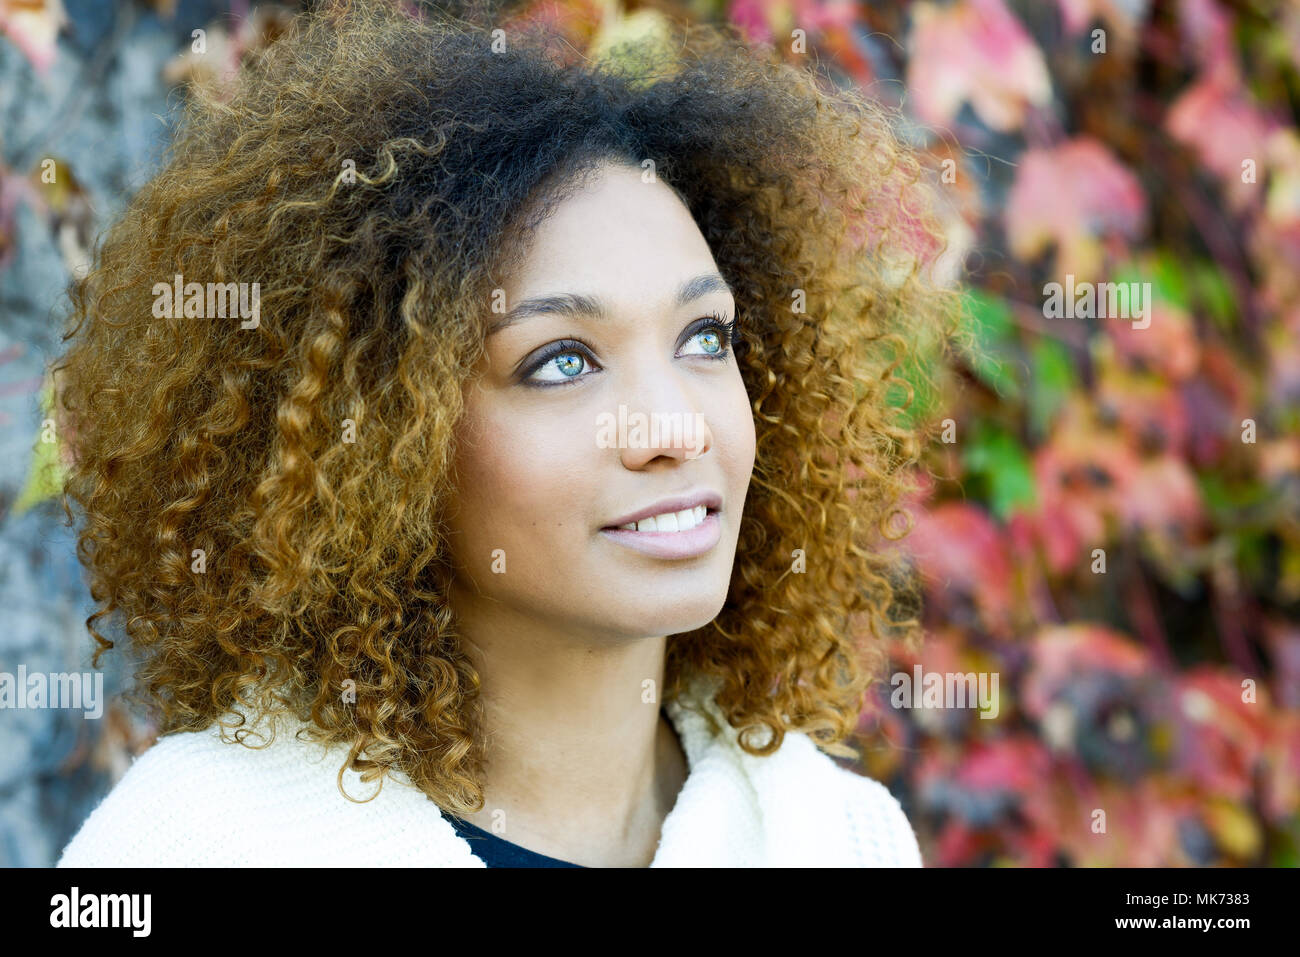 Schone Junge Afrikanische Amerikanische Frau Mit Afro Frisur Und Grune Augen Tragen Weisse Winter Dress Mit Herbst Blatter Im Hintergrund Stockfotografie Alamy